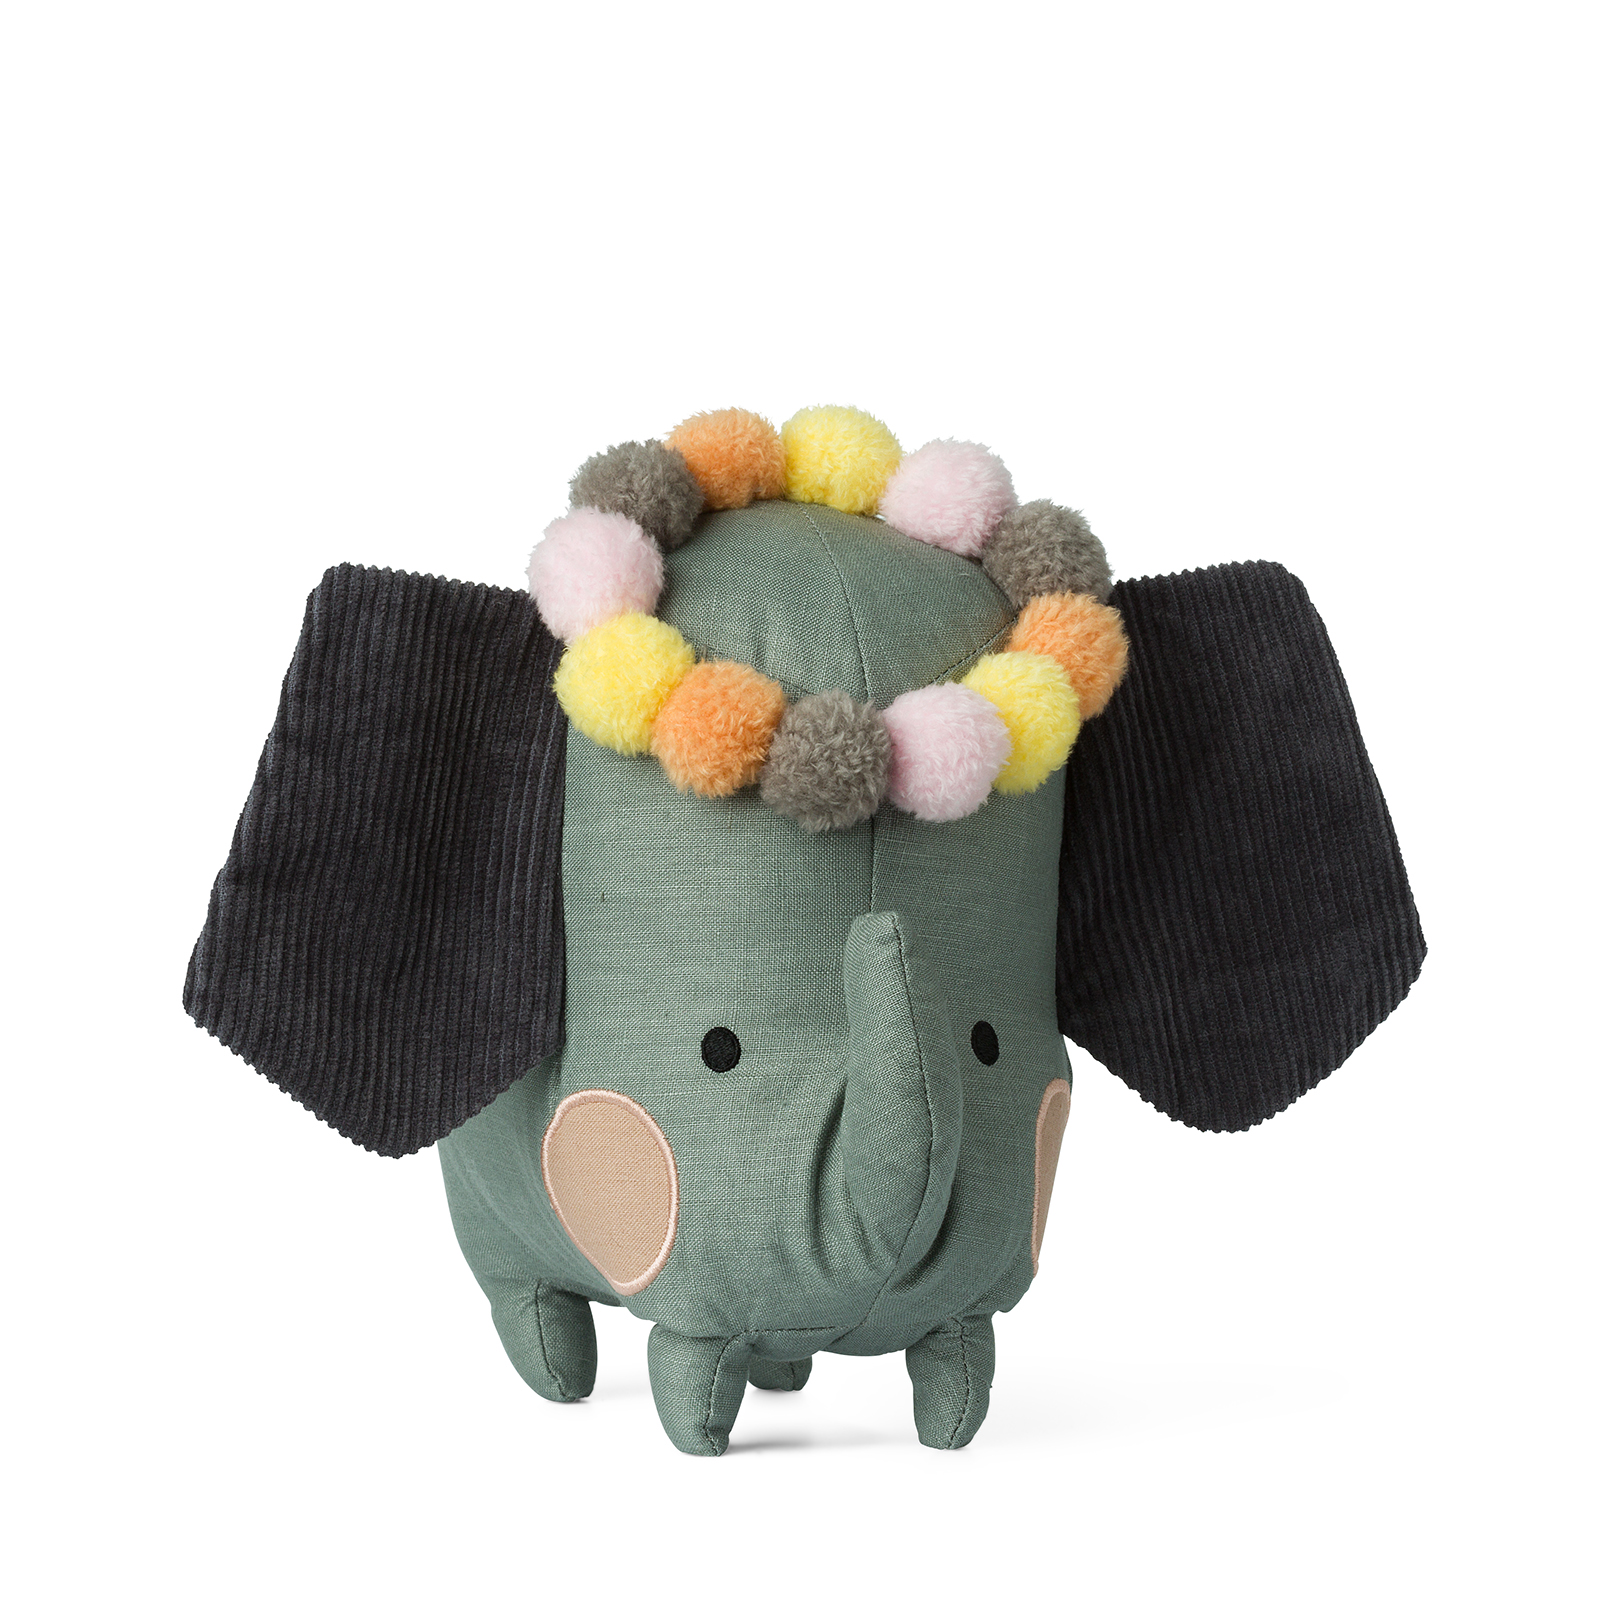 Elefant in cutie cadou, 18 cm, iFamily